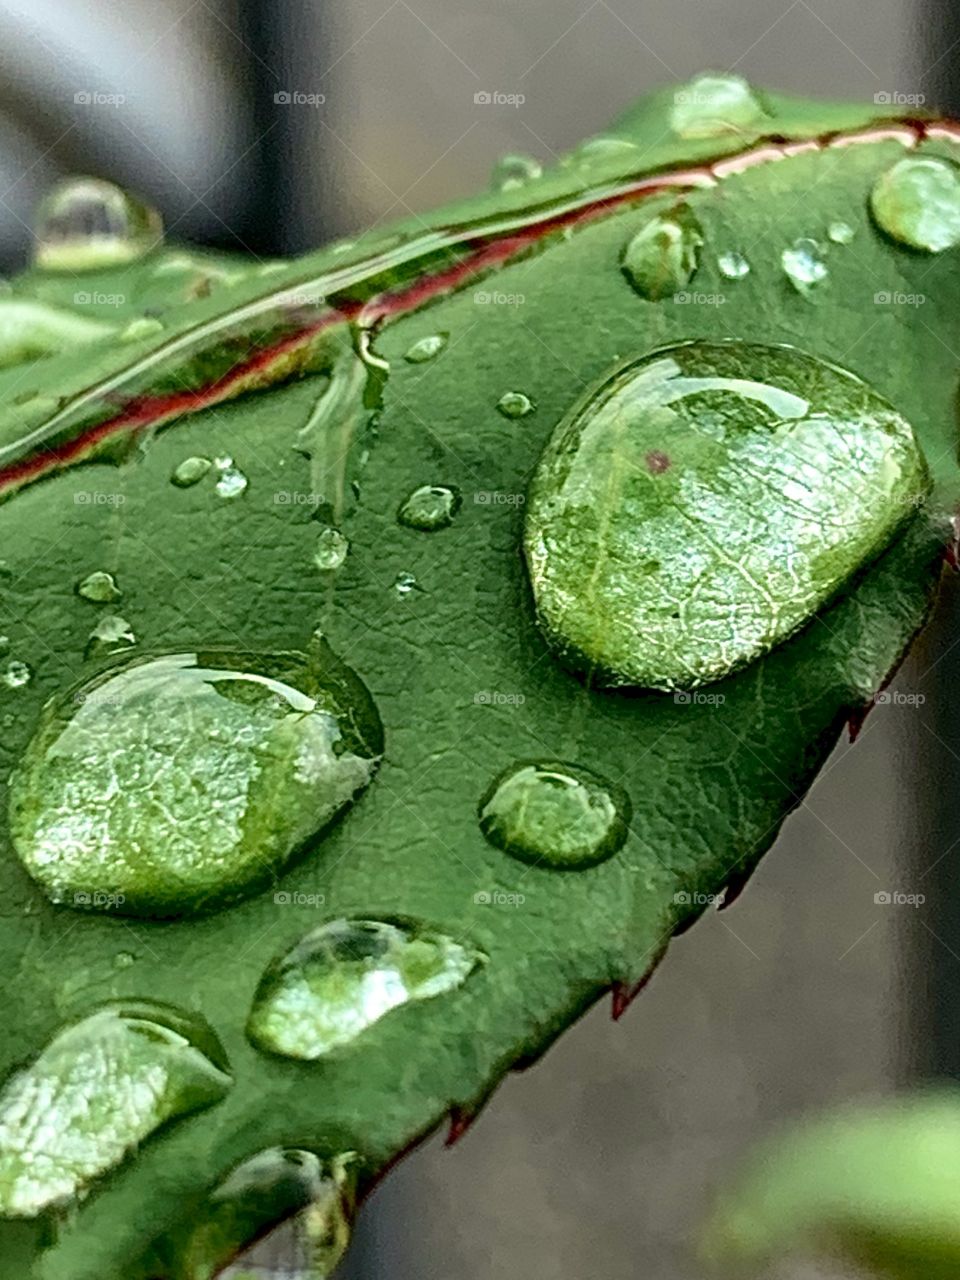 Drops of rain on a leaf